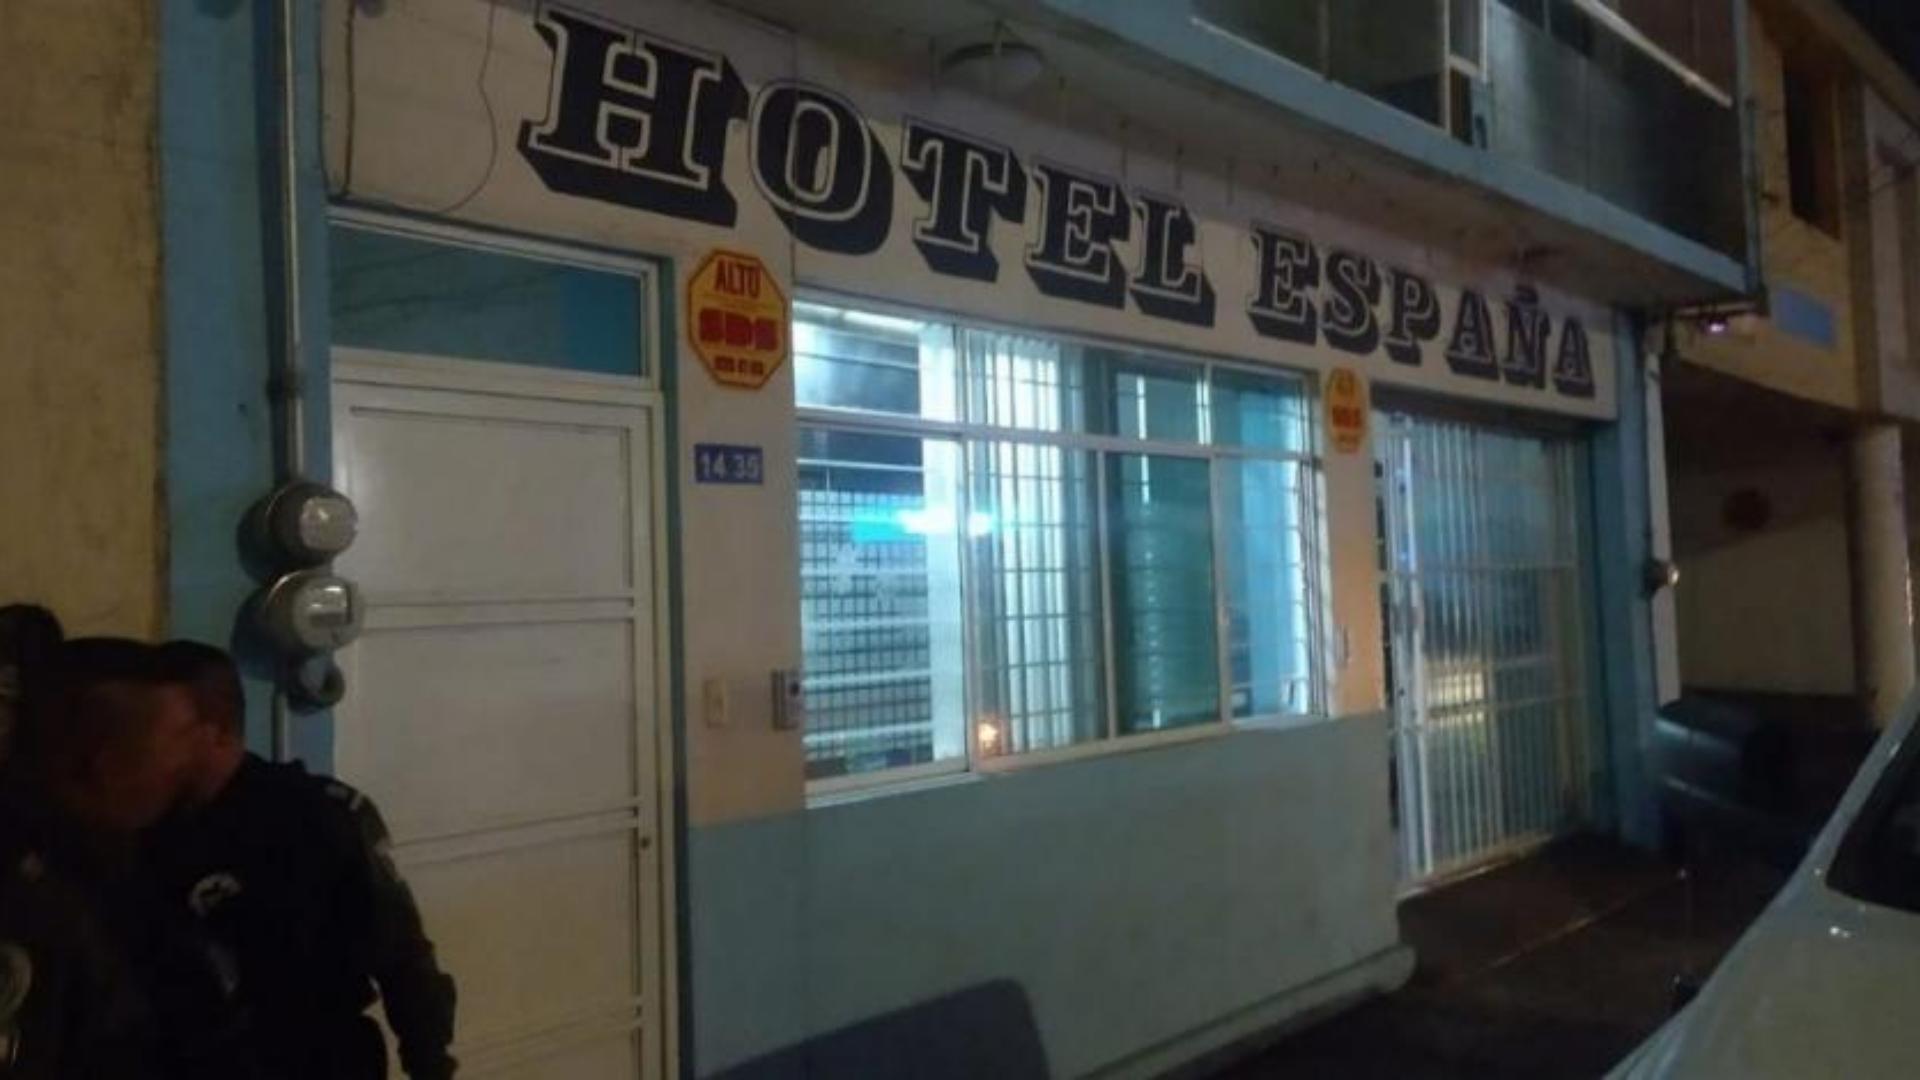 Hotel donde se encontraban los migrantes (Foto La Razón)